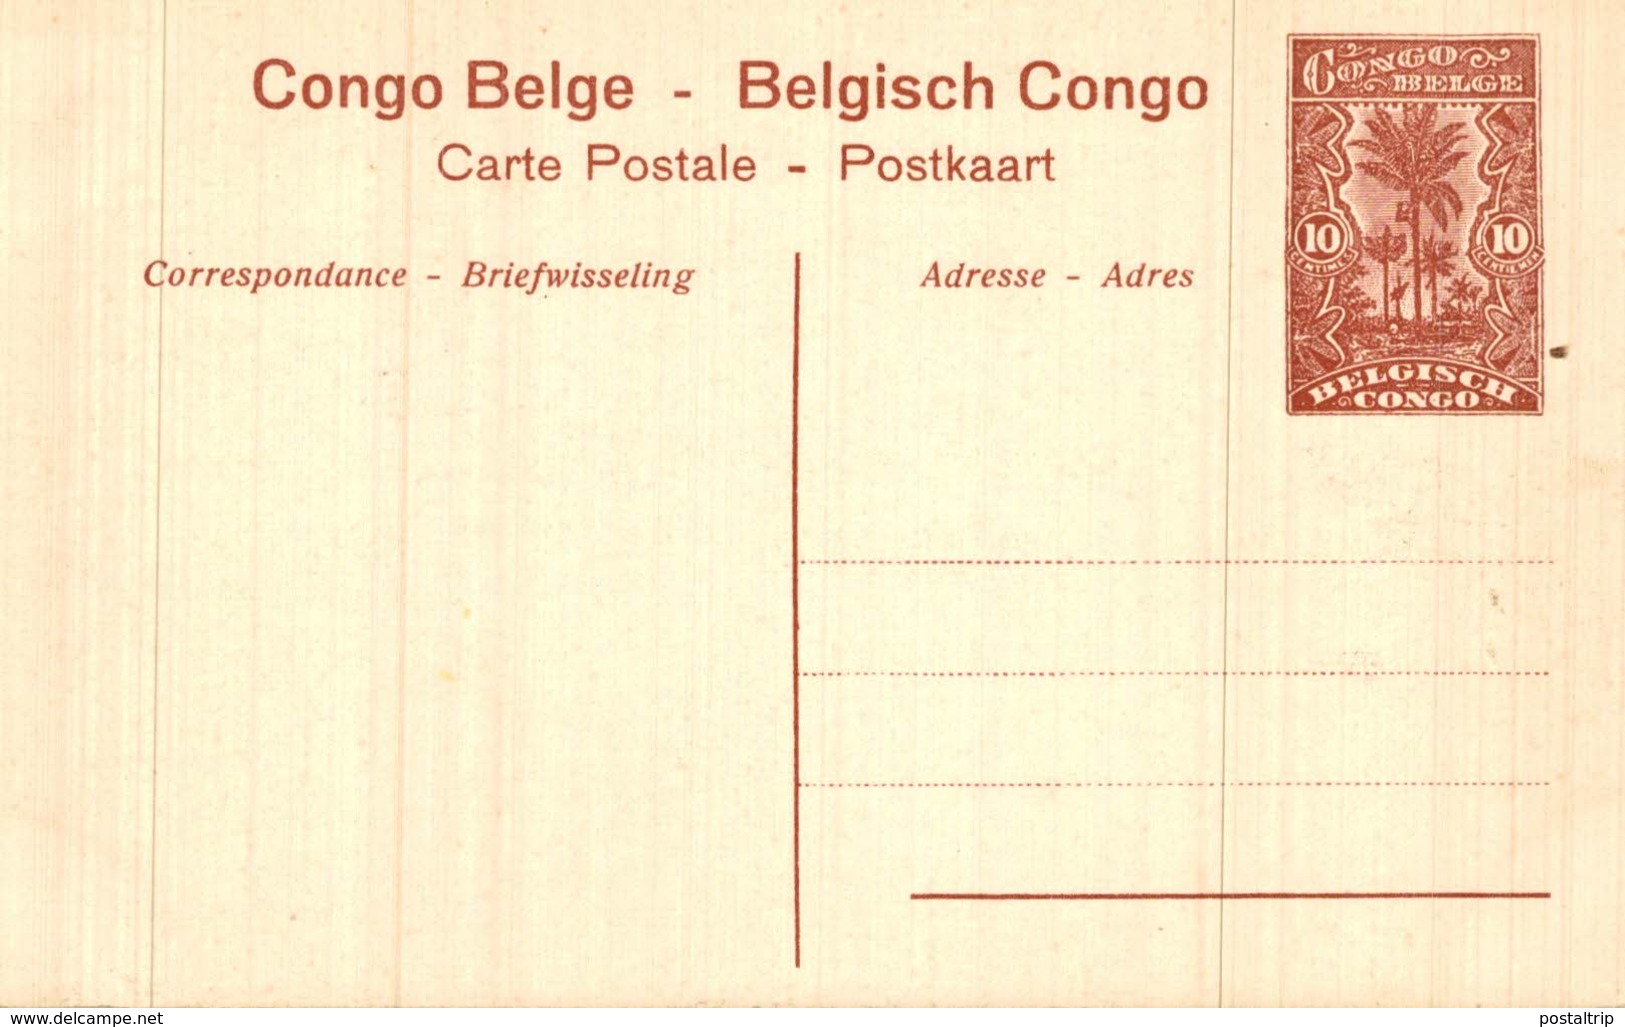 CONGO BELGE - Noirs Réunissant Du Bois Pour Le Chauffage Des Vapeurs - Belgian Congo